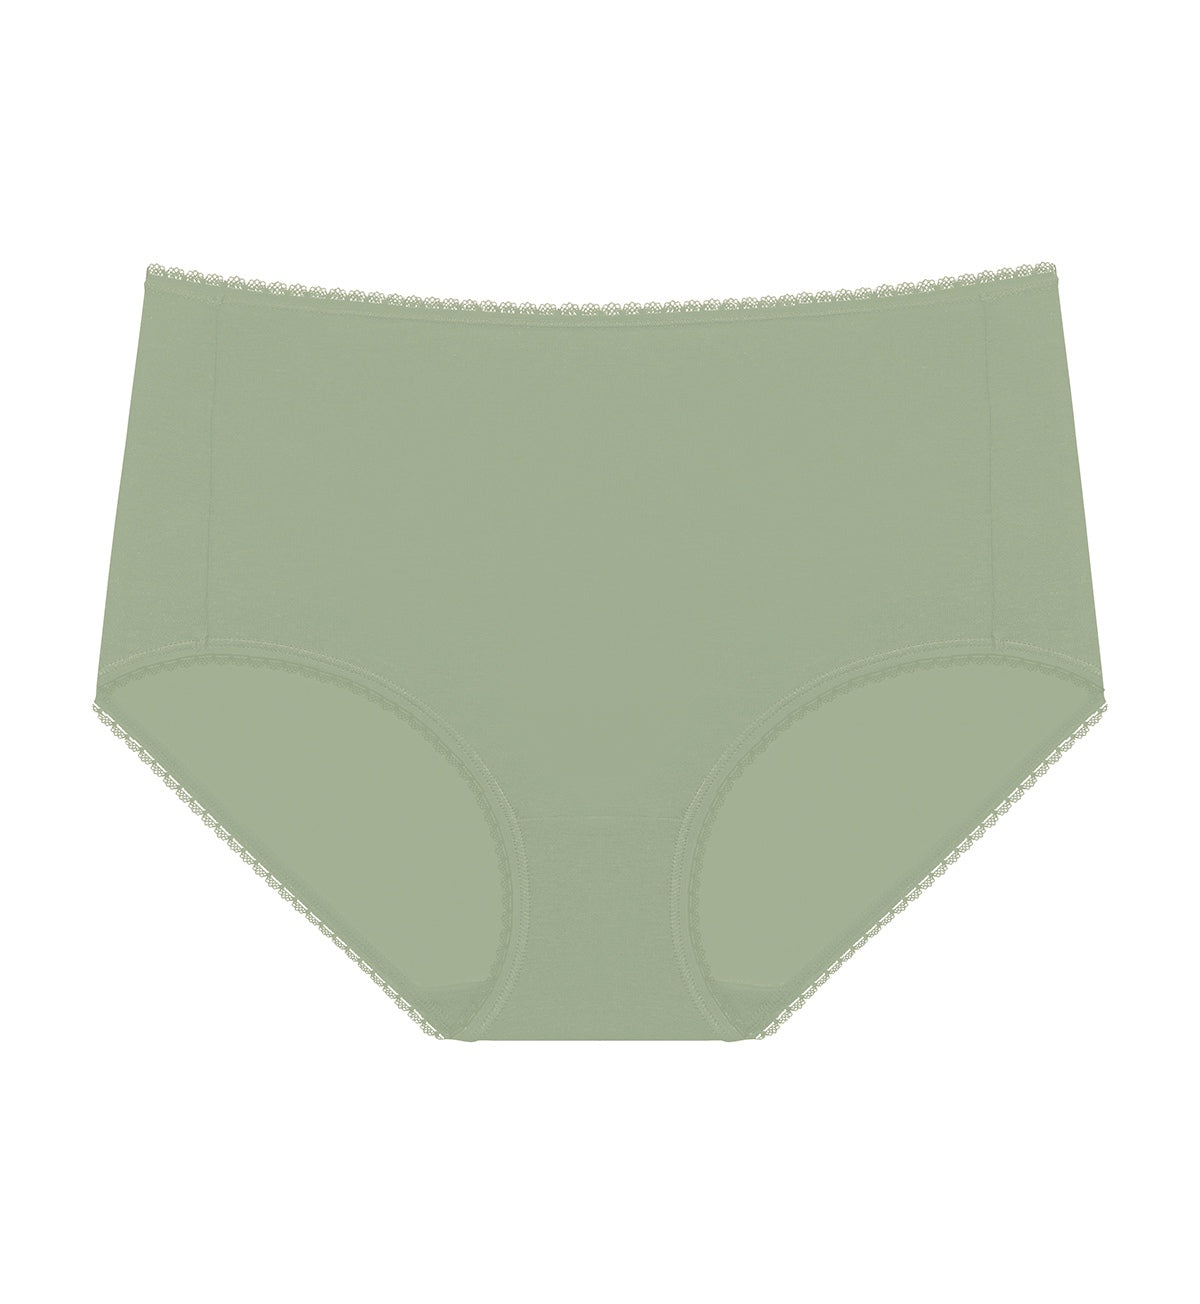 Maxi Panties, Independent Briefs, Natural TempSense Cotton Maxi Panties